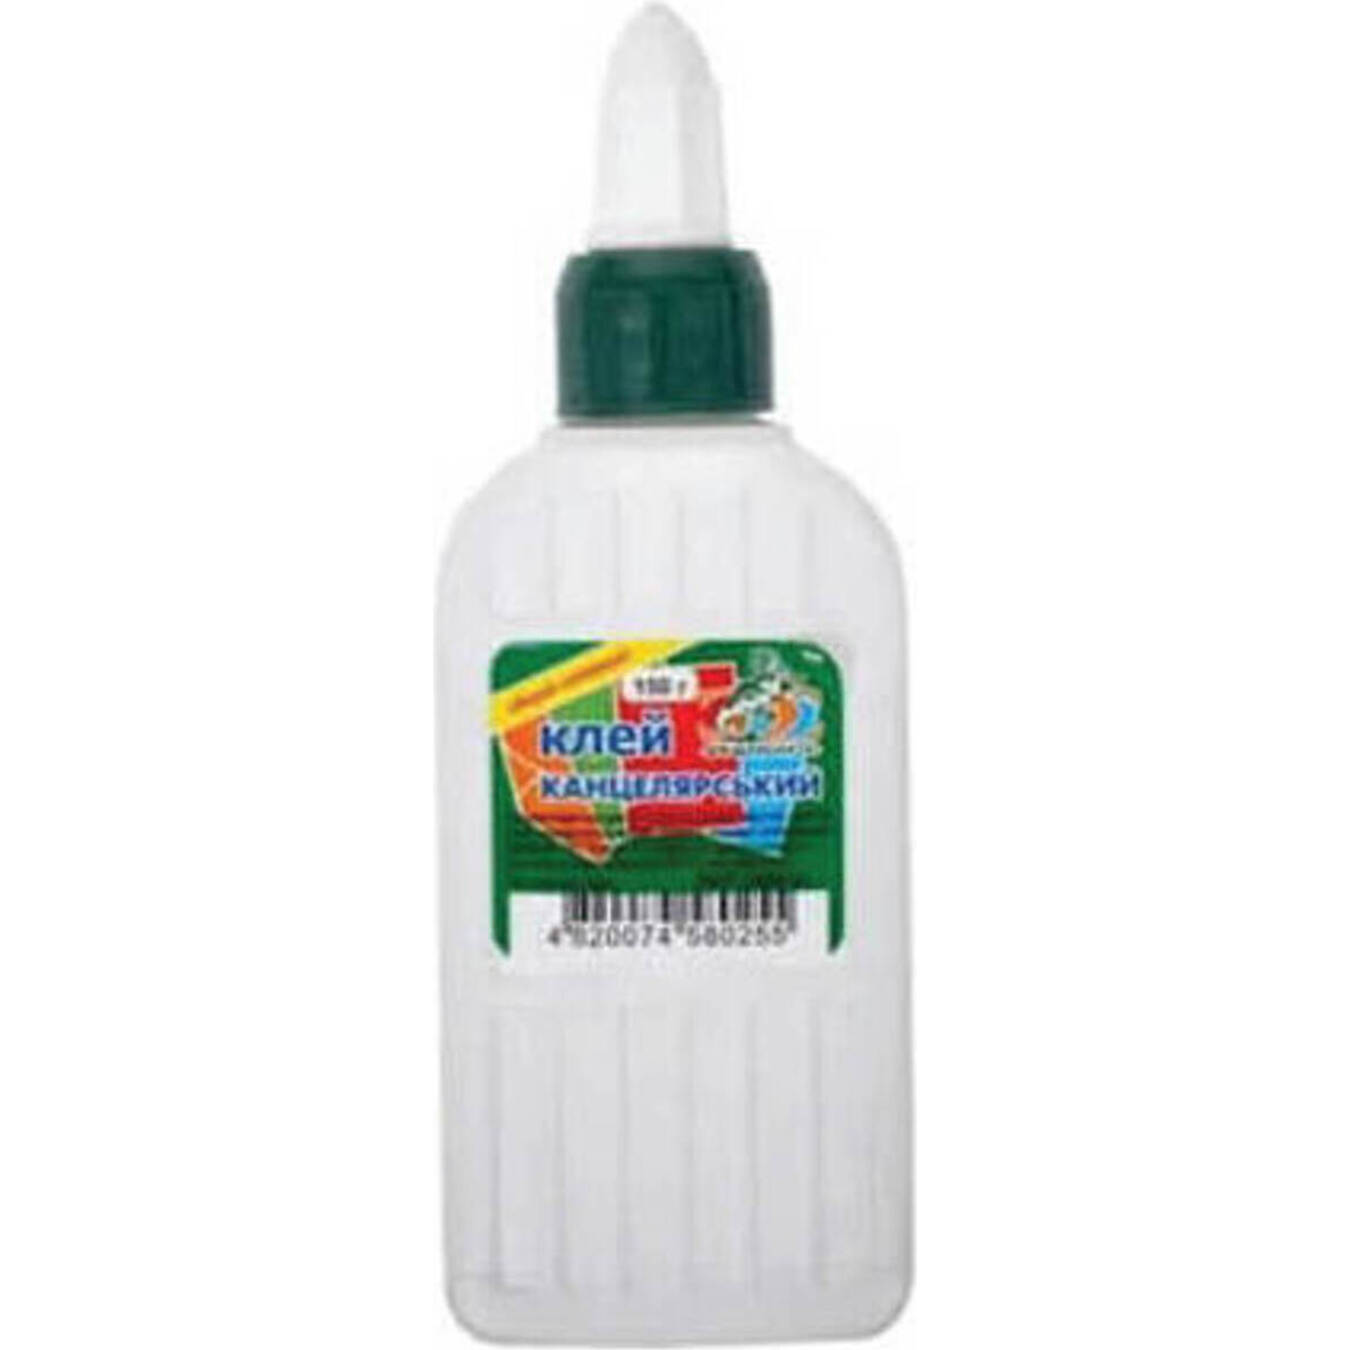 PVA glue Etalon super 100 ml